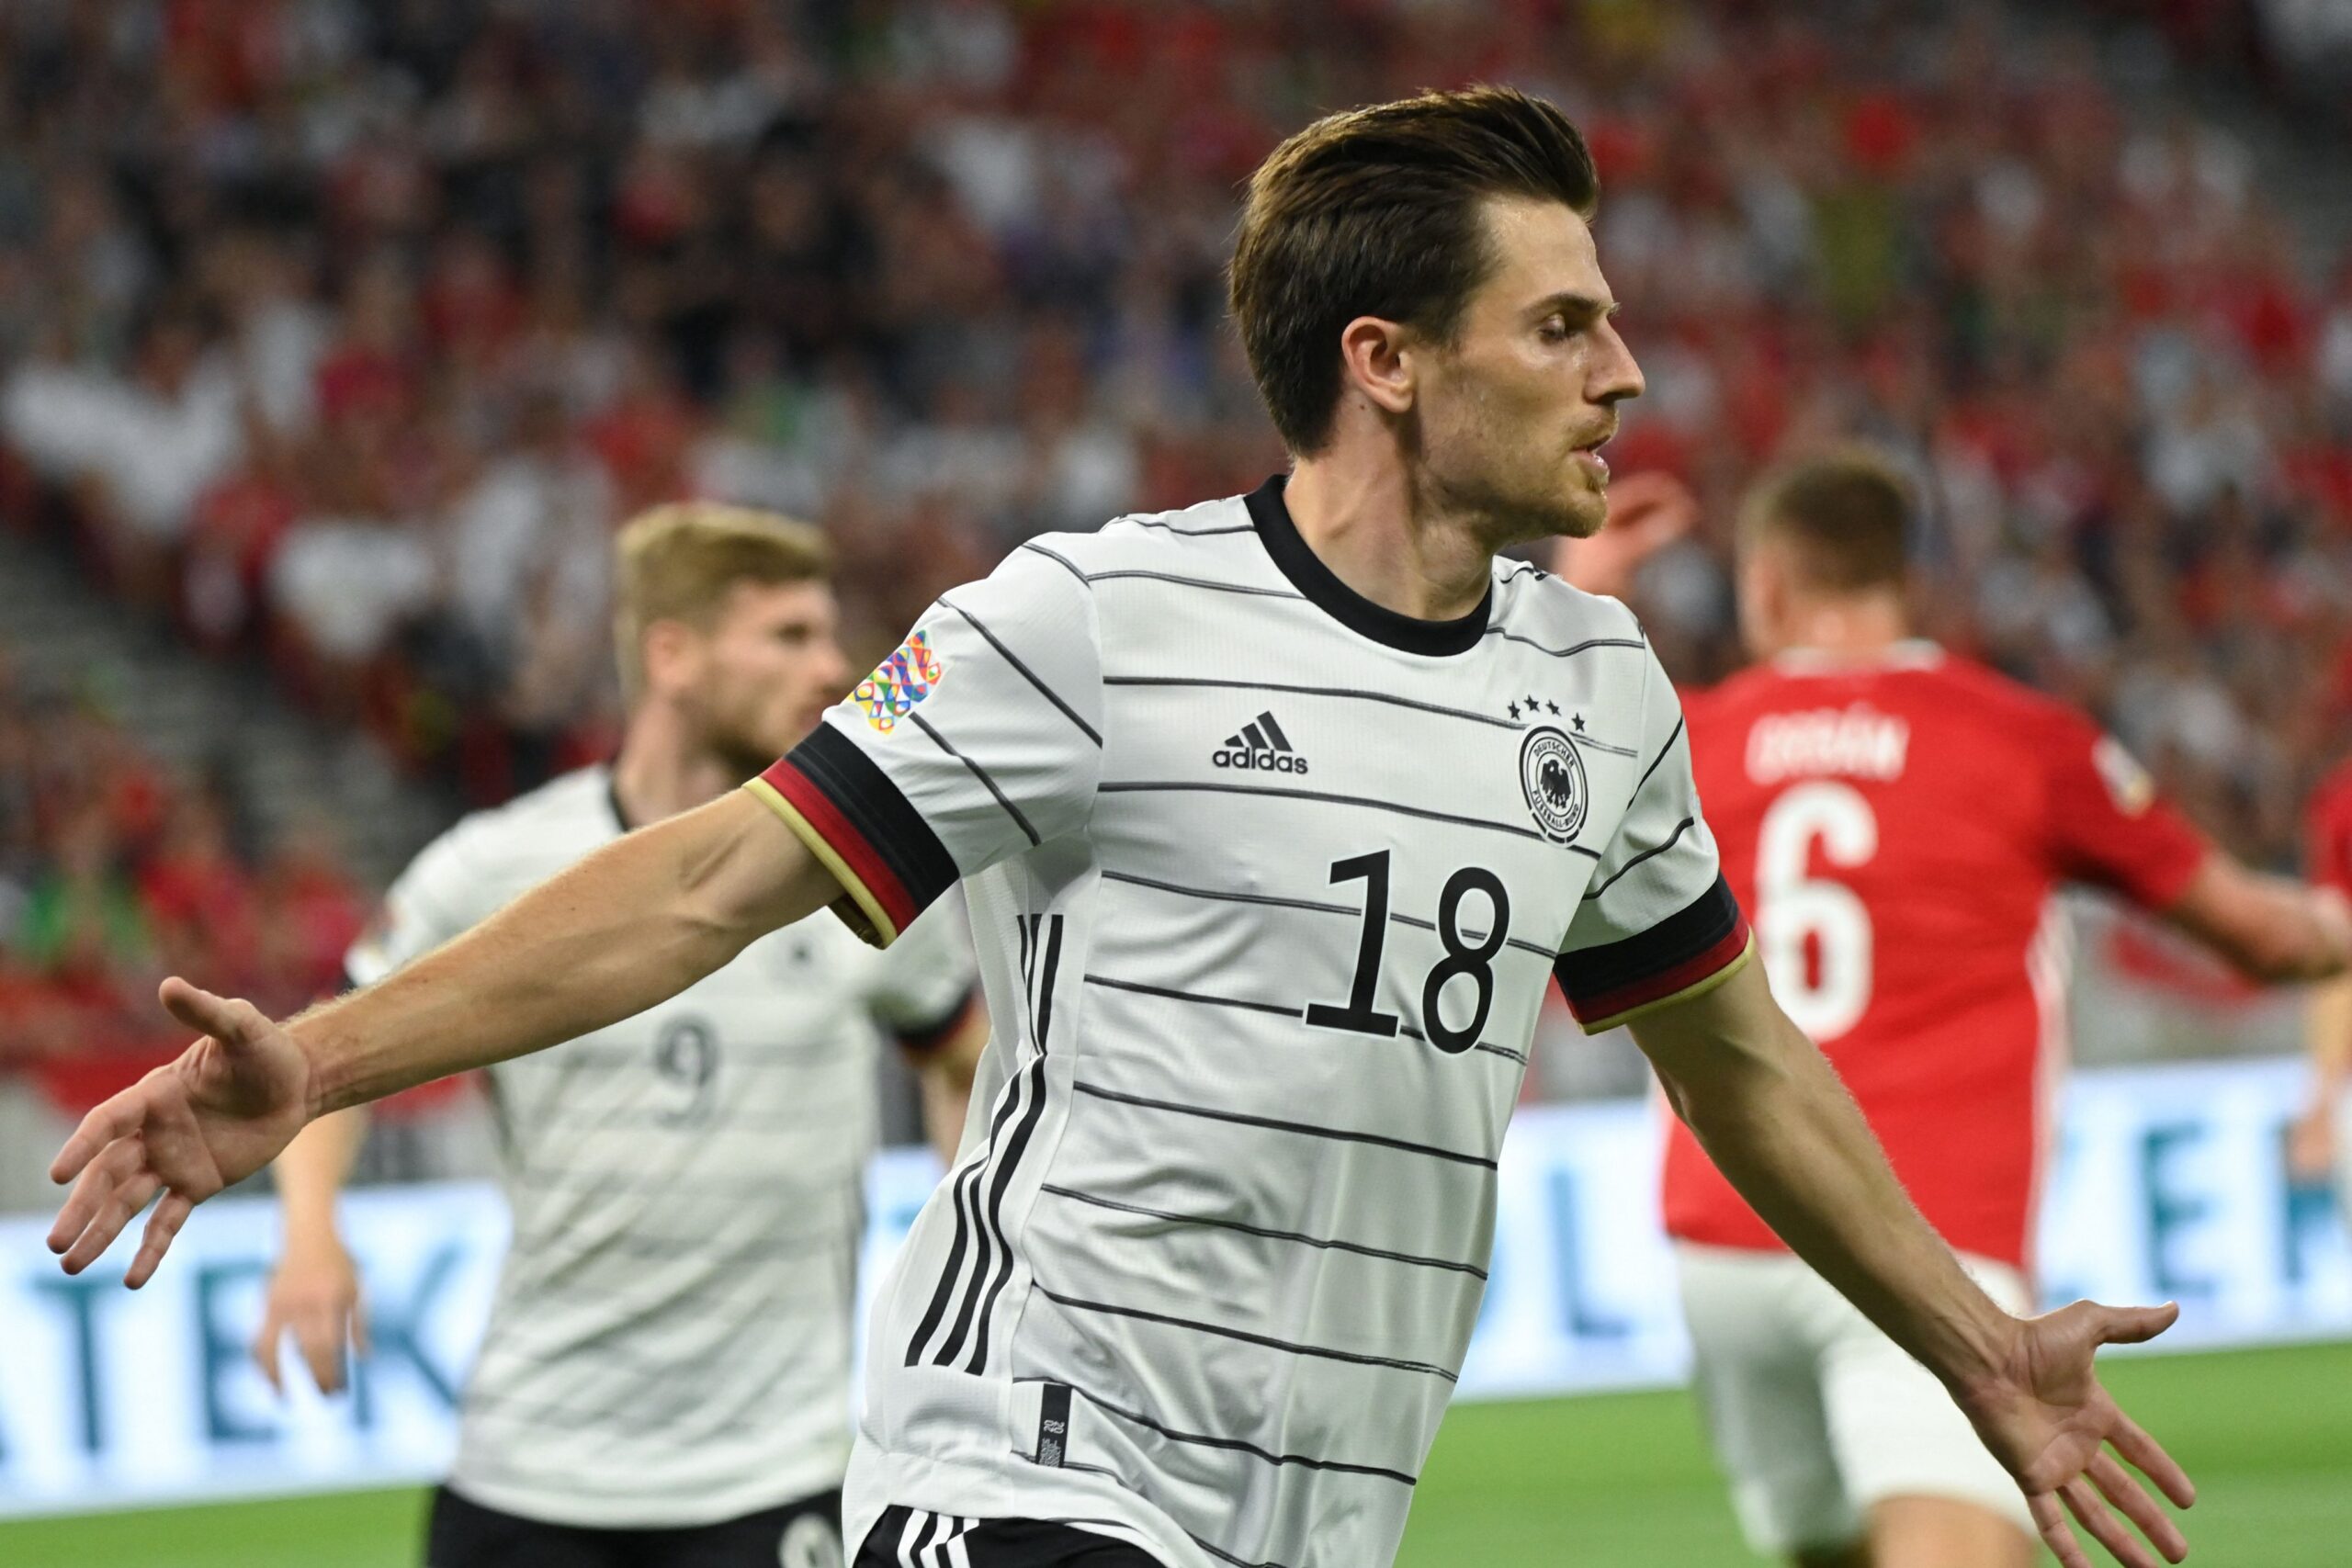 Germania speră la o evoluție mai bună decât la Mondialul din 2018, când nu a ieșit din grupe